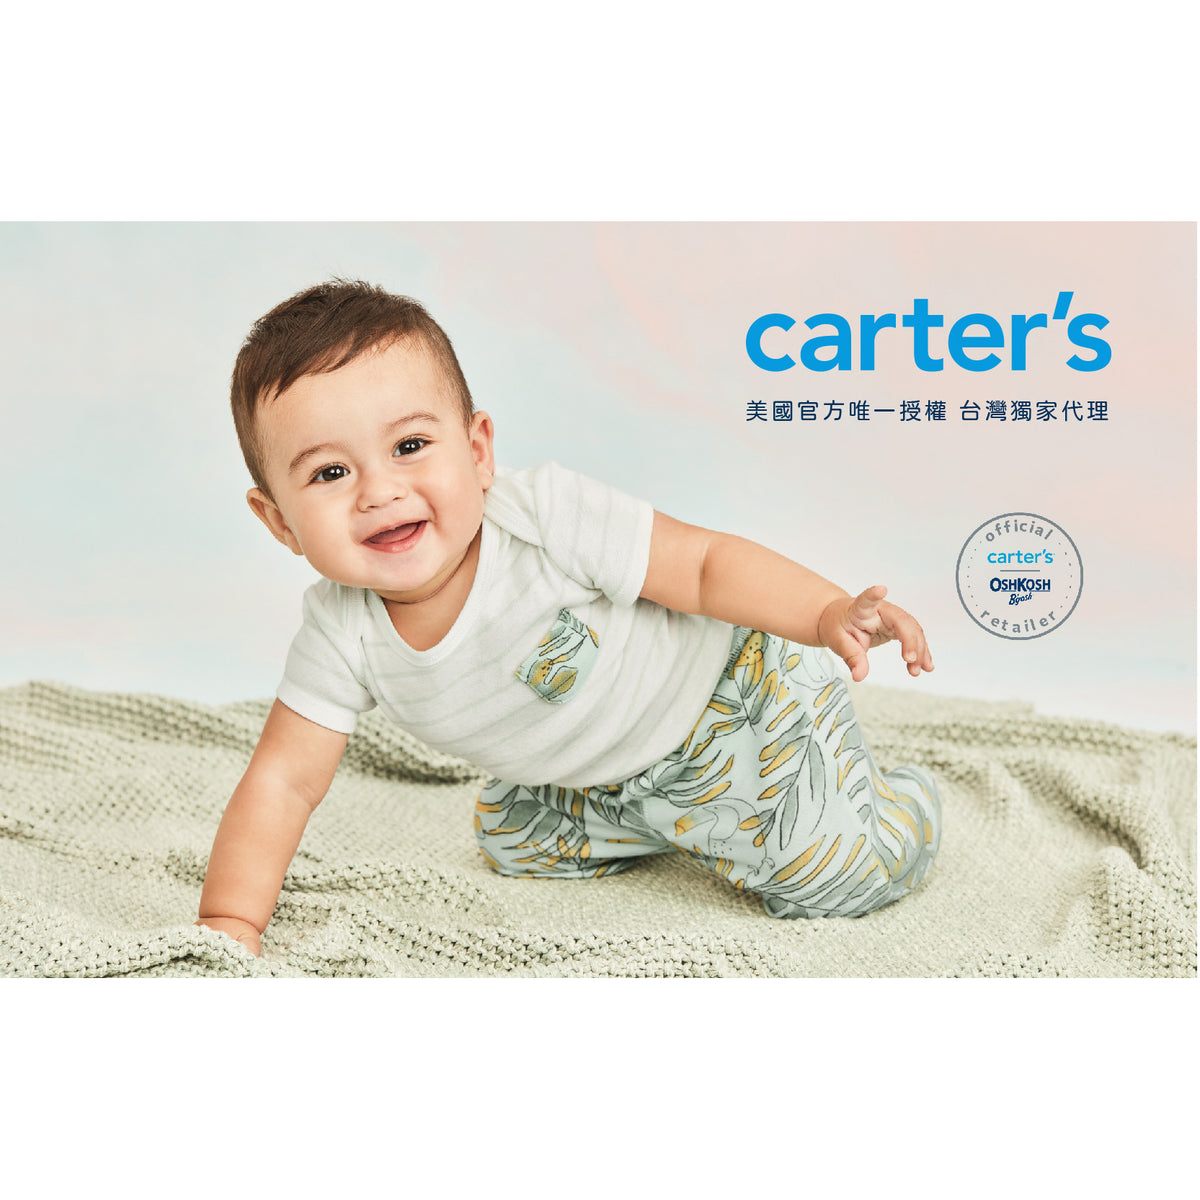 Carter's 卡其色高領上衣(12M-24M)